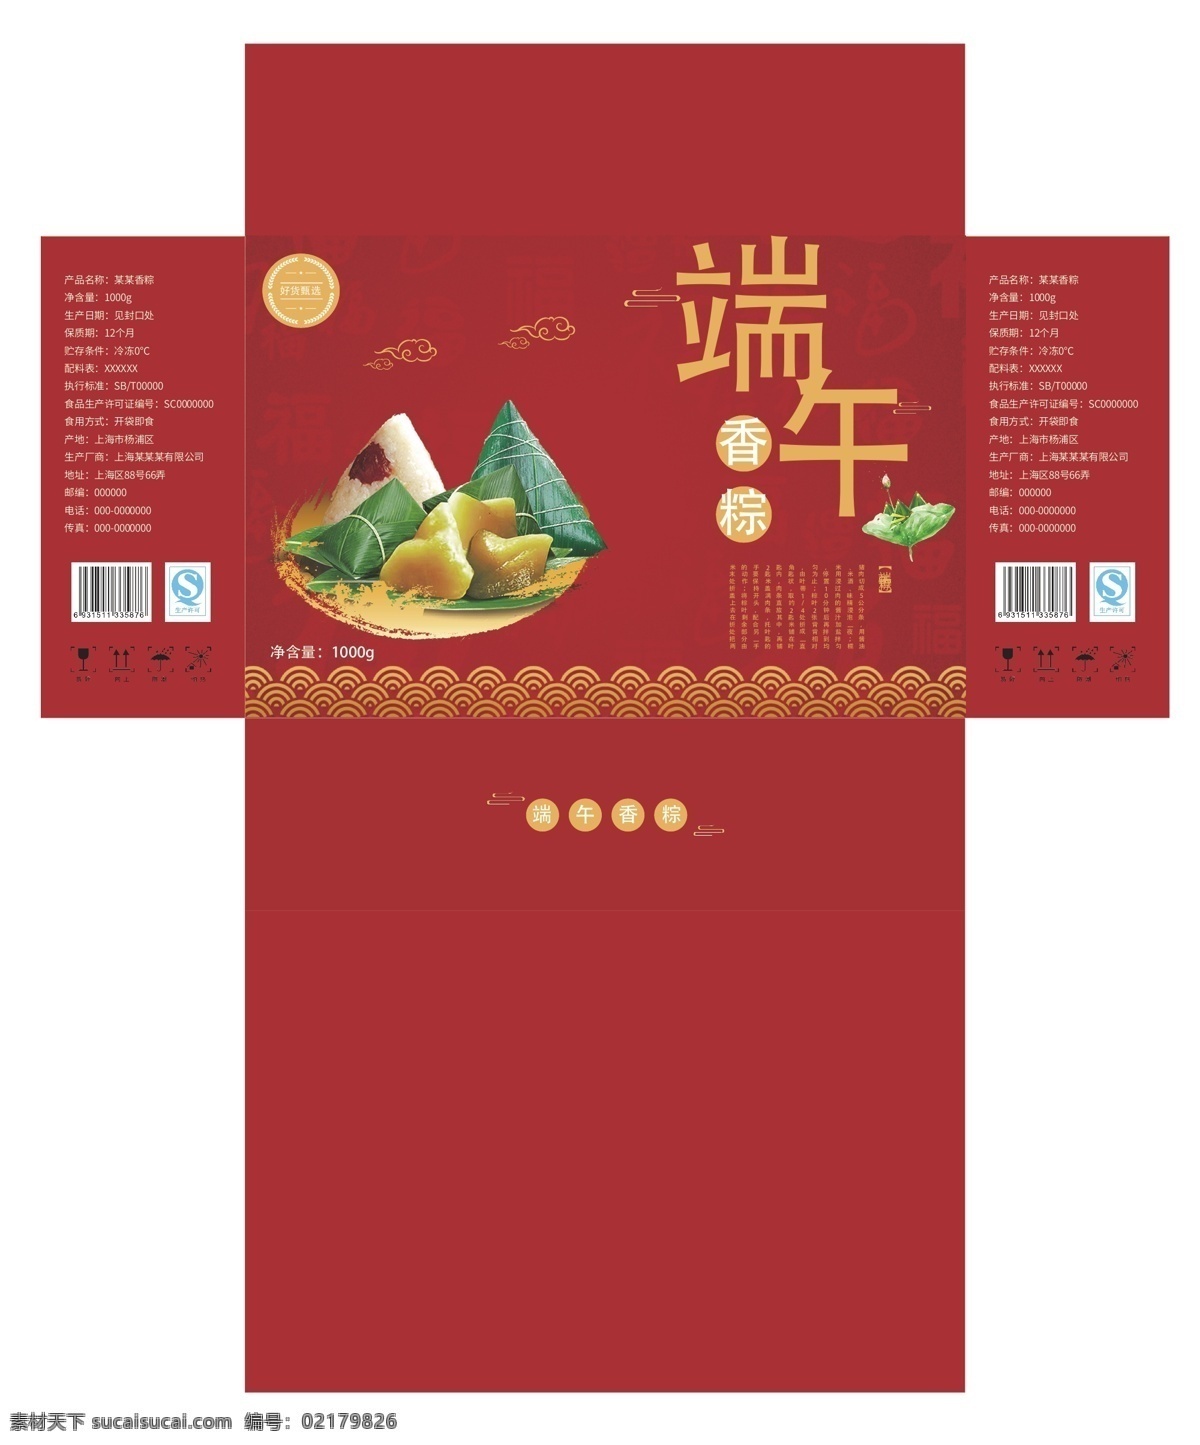 端午节 粽子 包装盒 礼盒 端午节包装盒 端午节海报 粽子包装盒 粽子礼盒